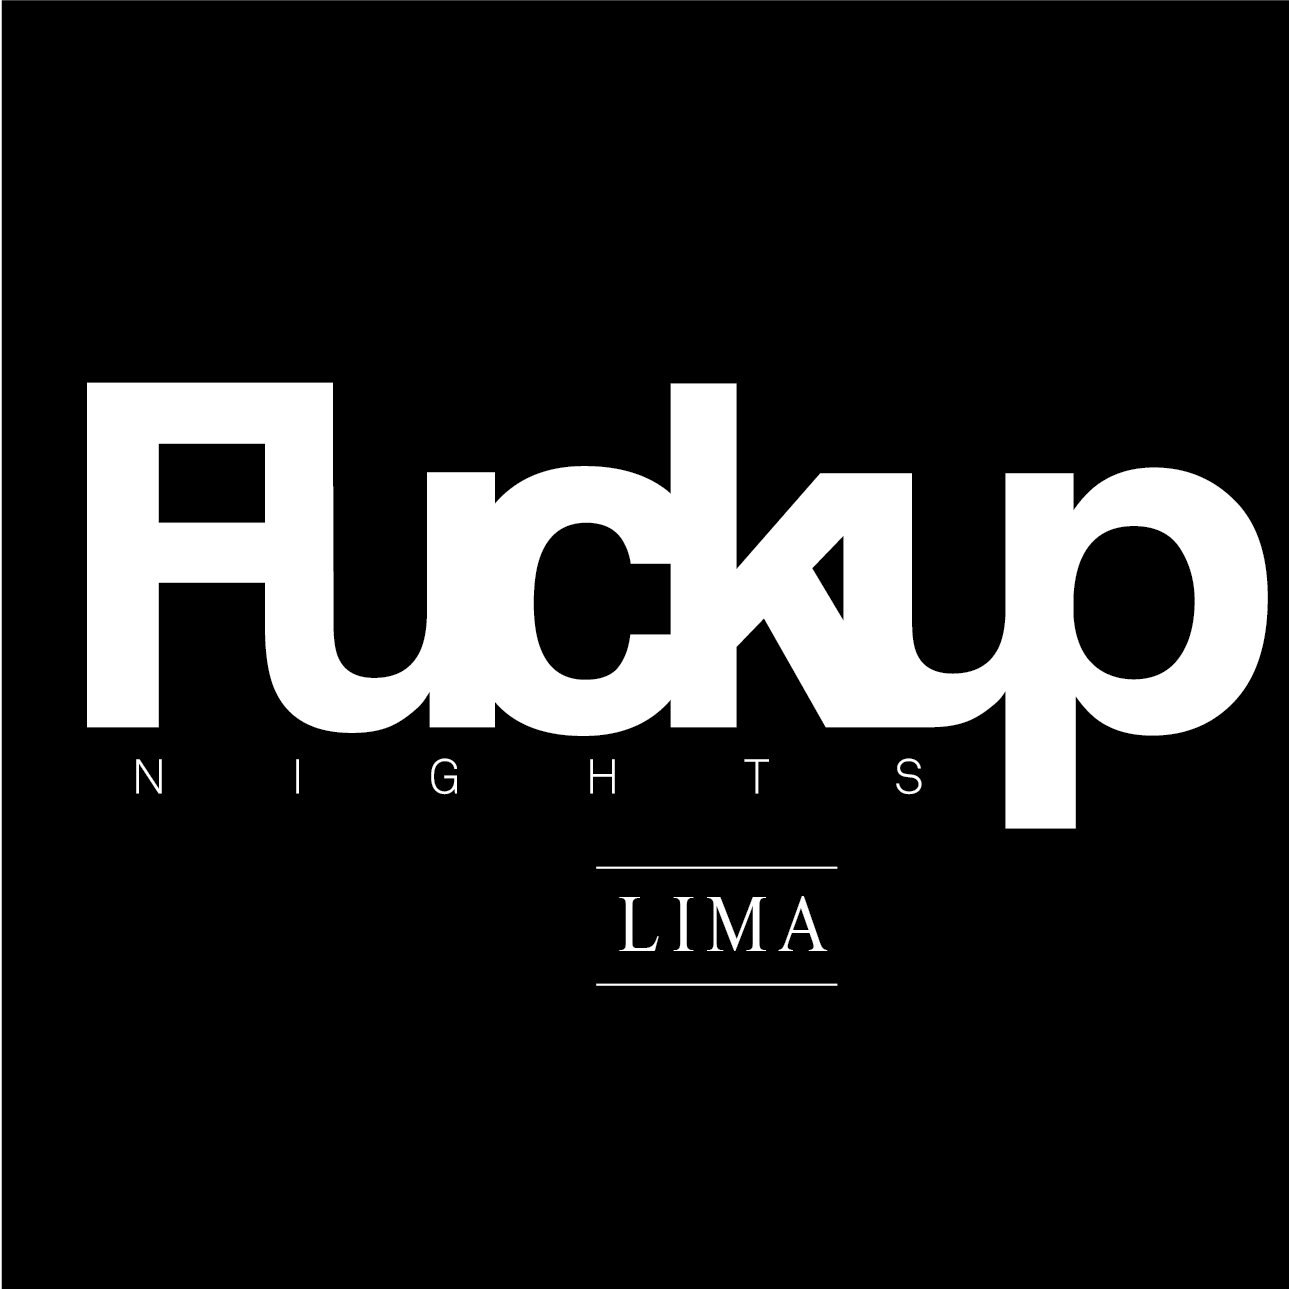 Fuckup Nights Lima reúne a personas notables (famosos, empresarios) con un fail que revelar y compartir. Todo para aprender, liberarse y conectar. Te esperamos.